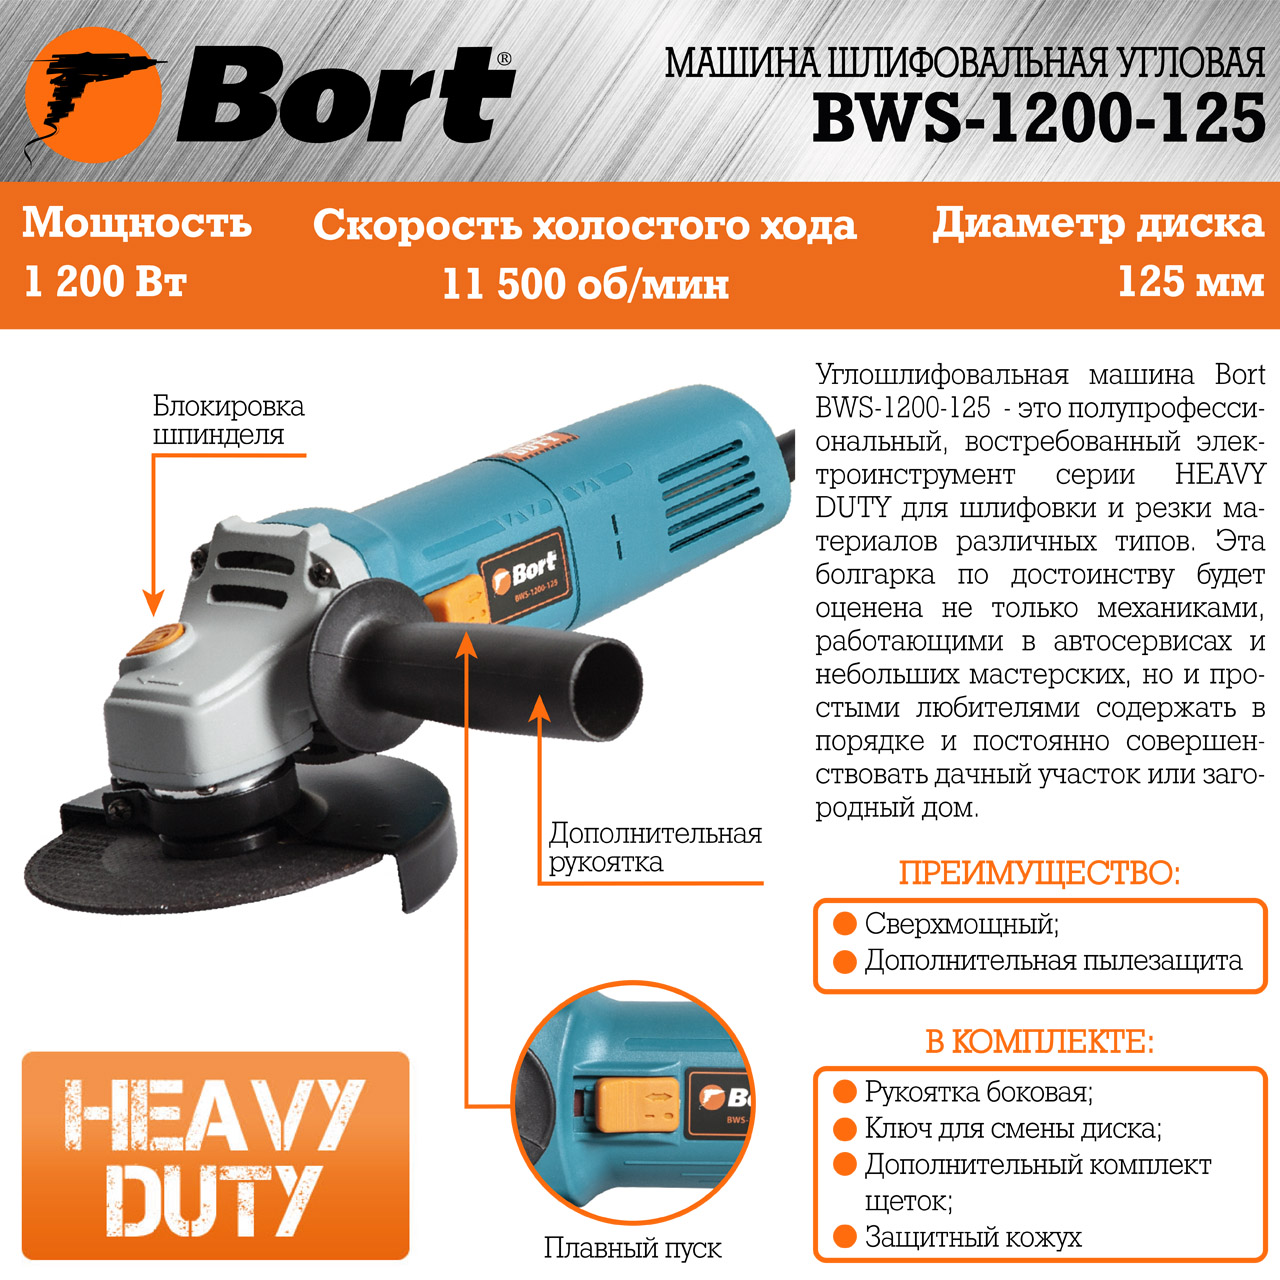 Шлифовальная машина Bort BWS-1200-125 [91275363] купить в Красноярске